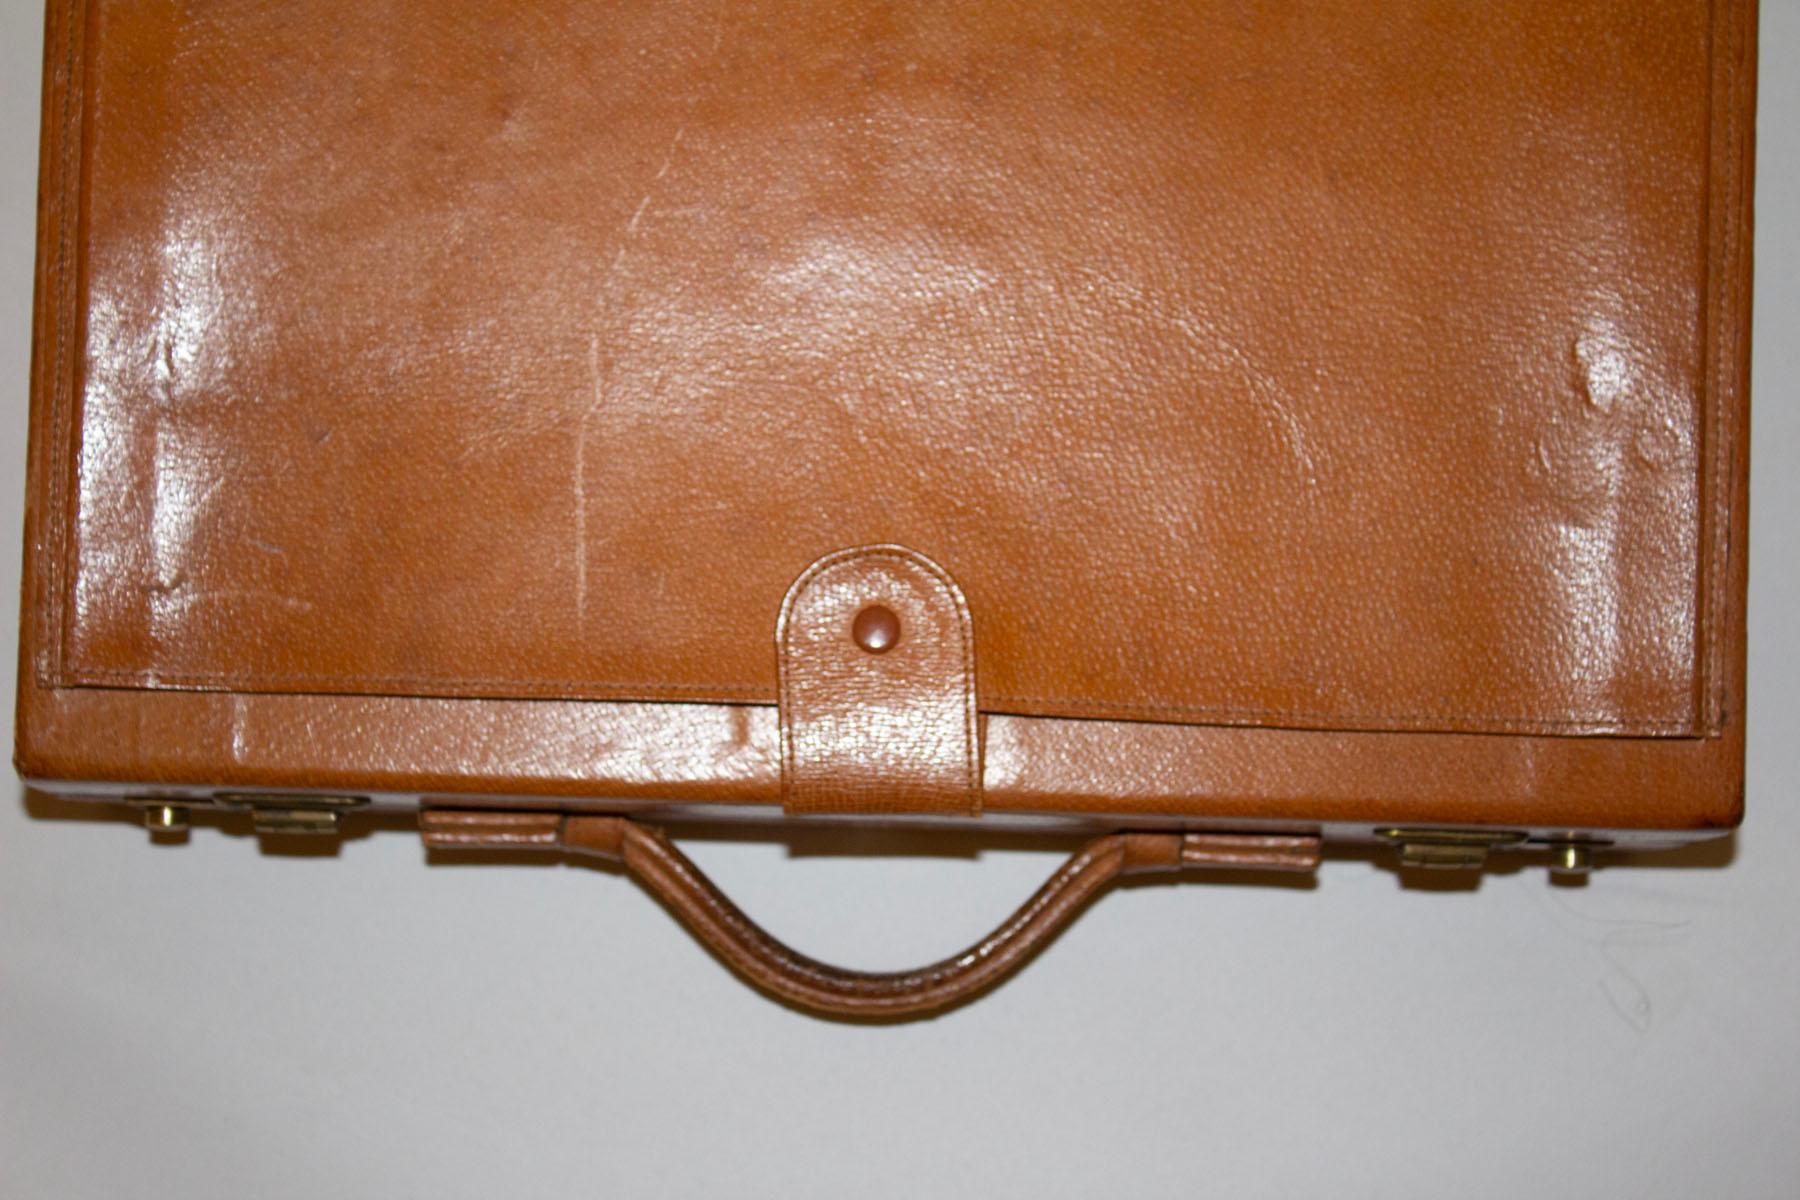 Brown Airway Presto Combo Lock briefcase